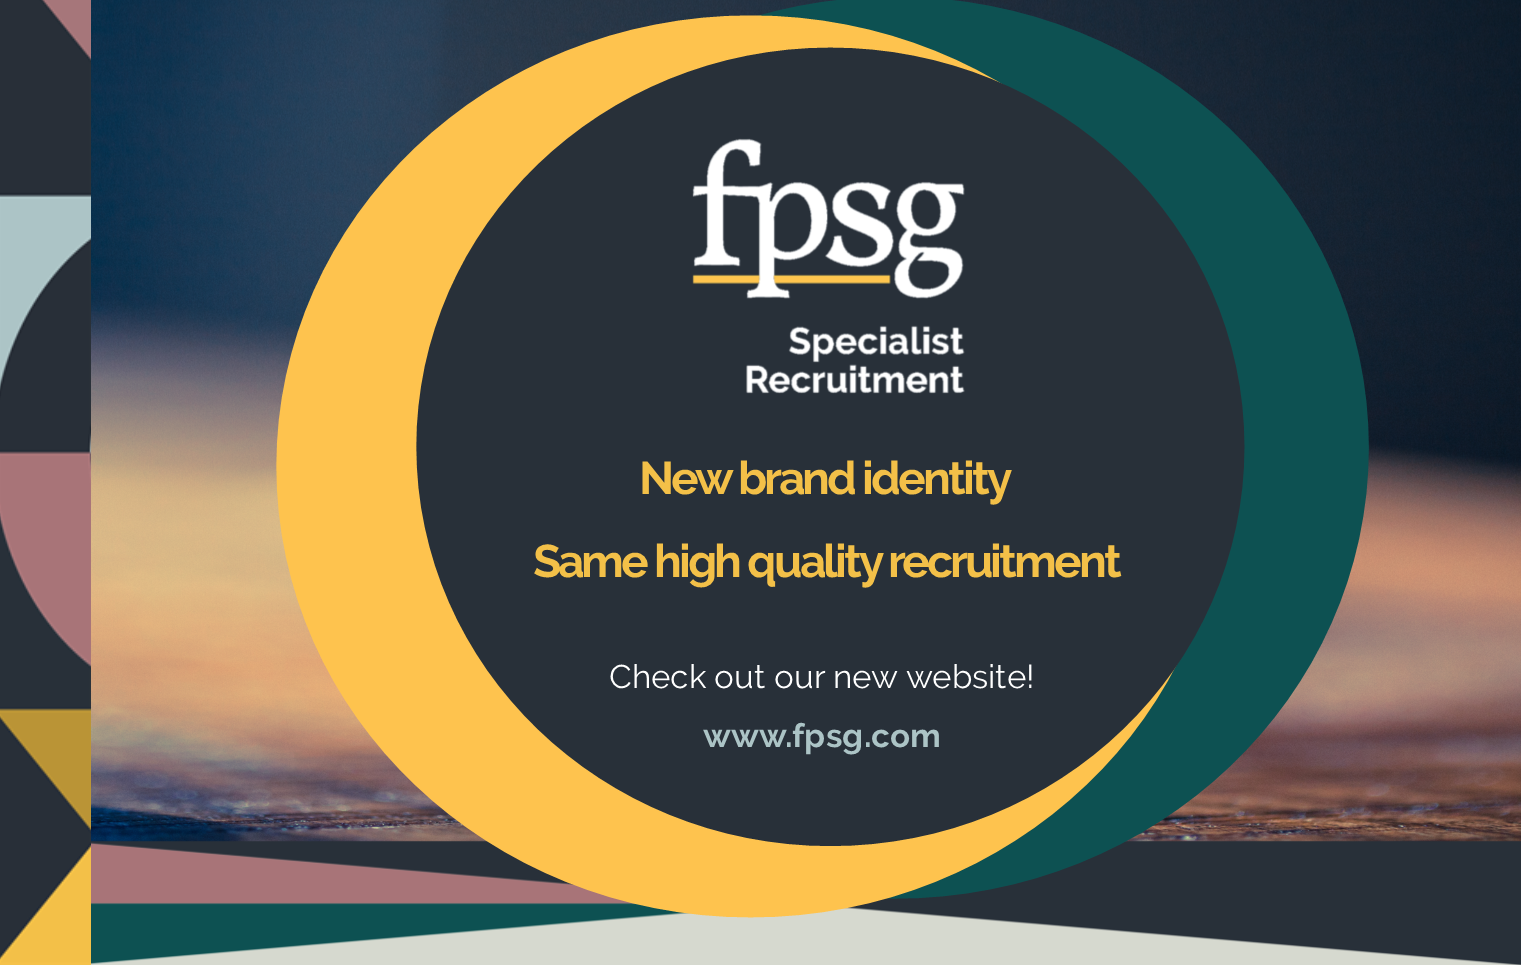 fpsg new brand identity